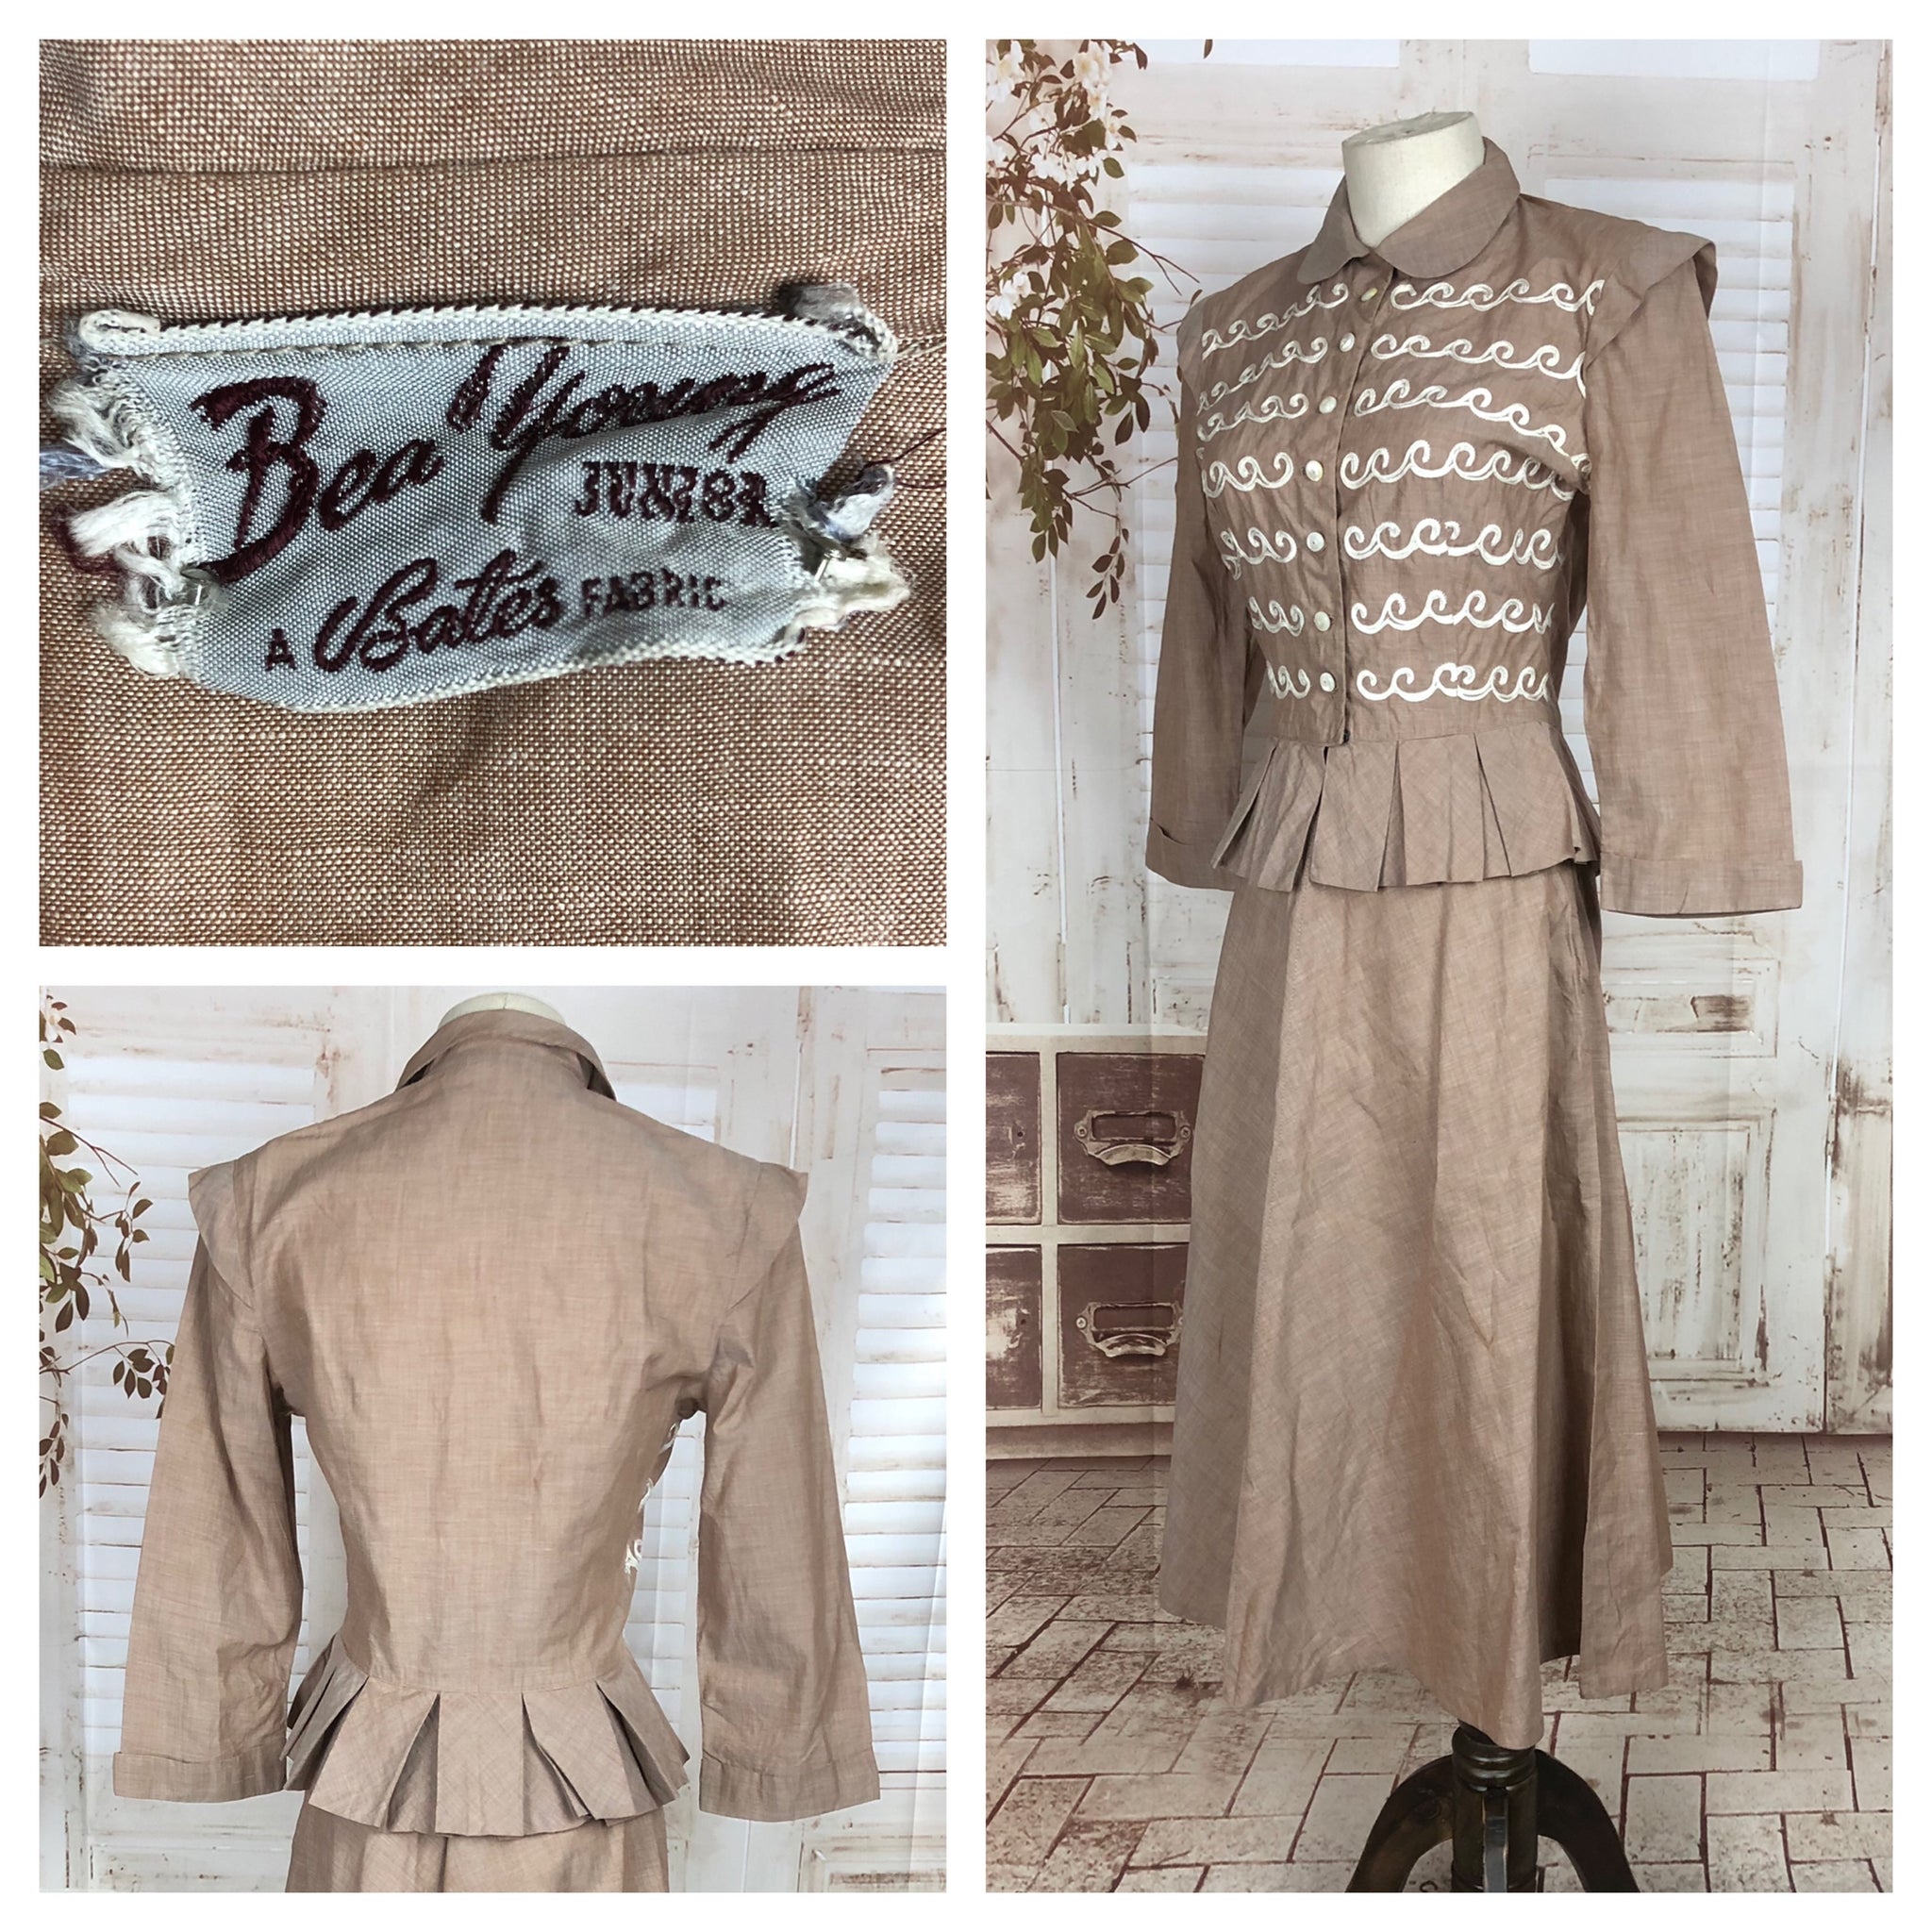 Original 1940s 40s Vintage New Look Style Sandy Cotton Suit With Wave Soutache Bodice Decoration